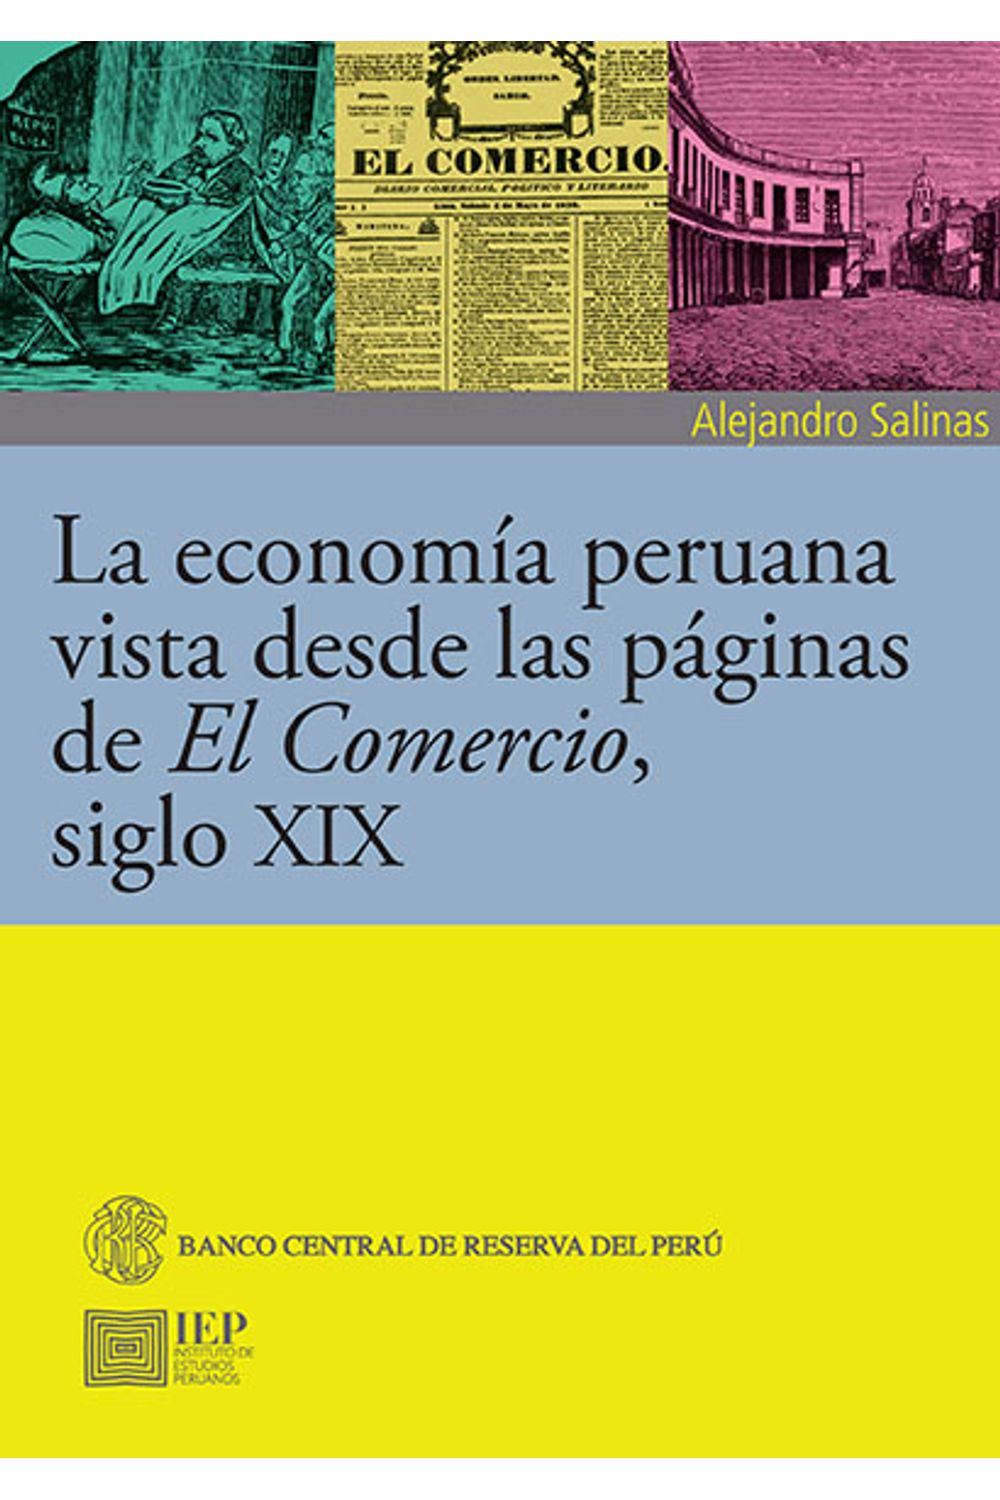 bm-la-economia-peruana-vista-desde-las-paginas-de-el-comercio-siglo-xix-instituto-de-estudios-peruanos-iep-9789972516719